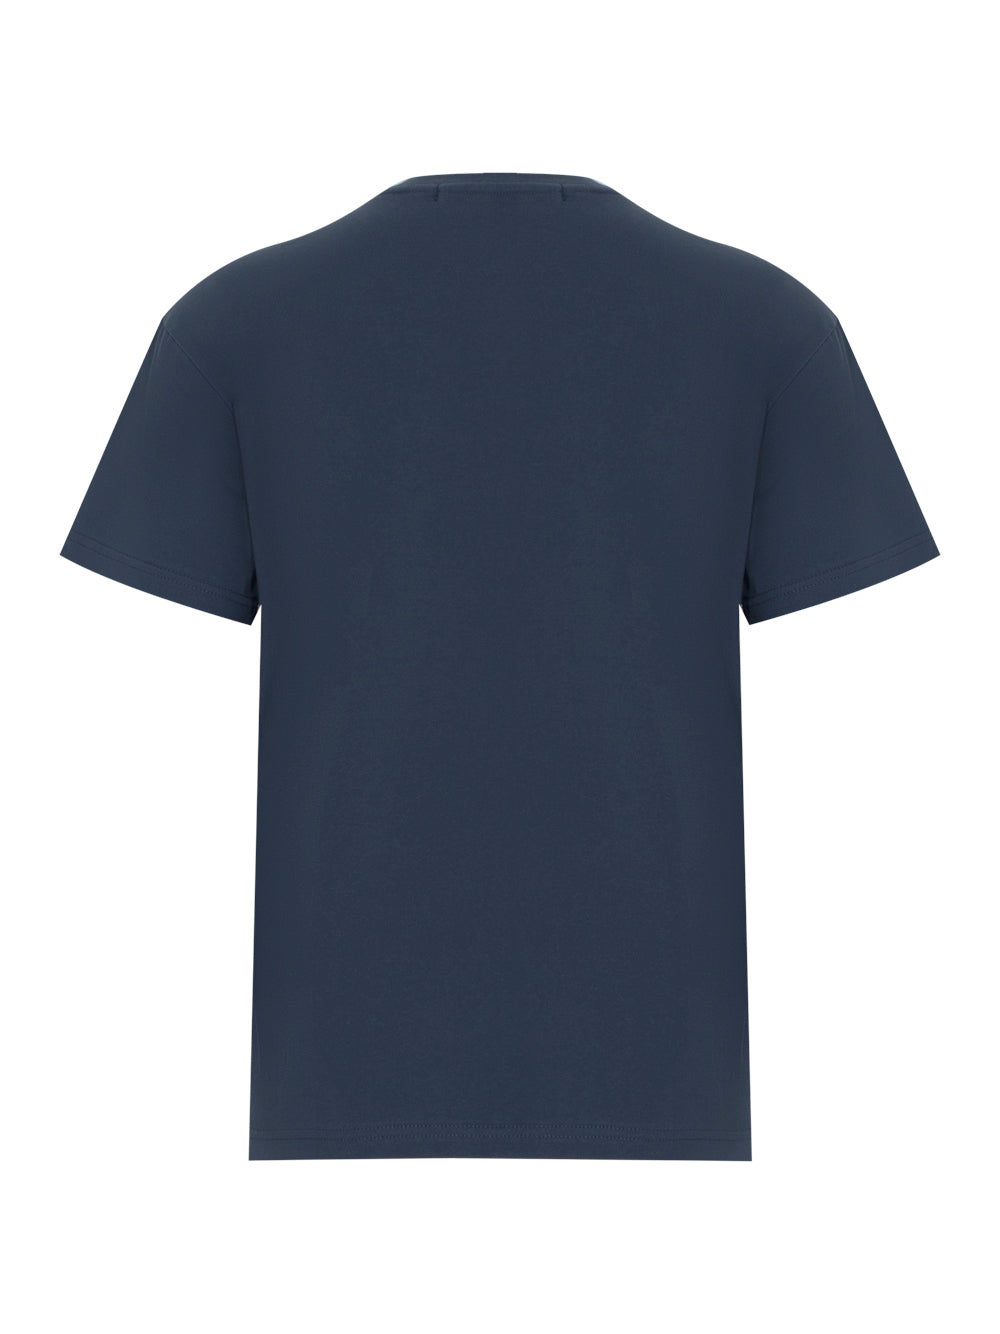 Essential Unisex Adsb Cheerie Ader T-shirt (Navy)